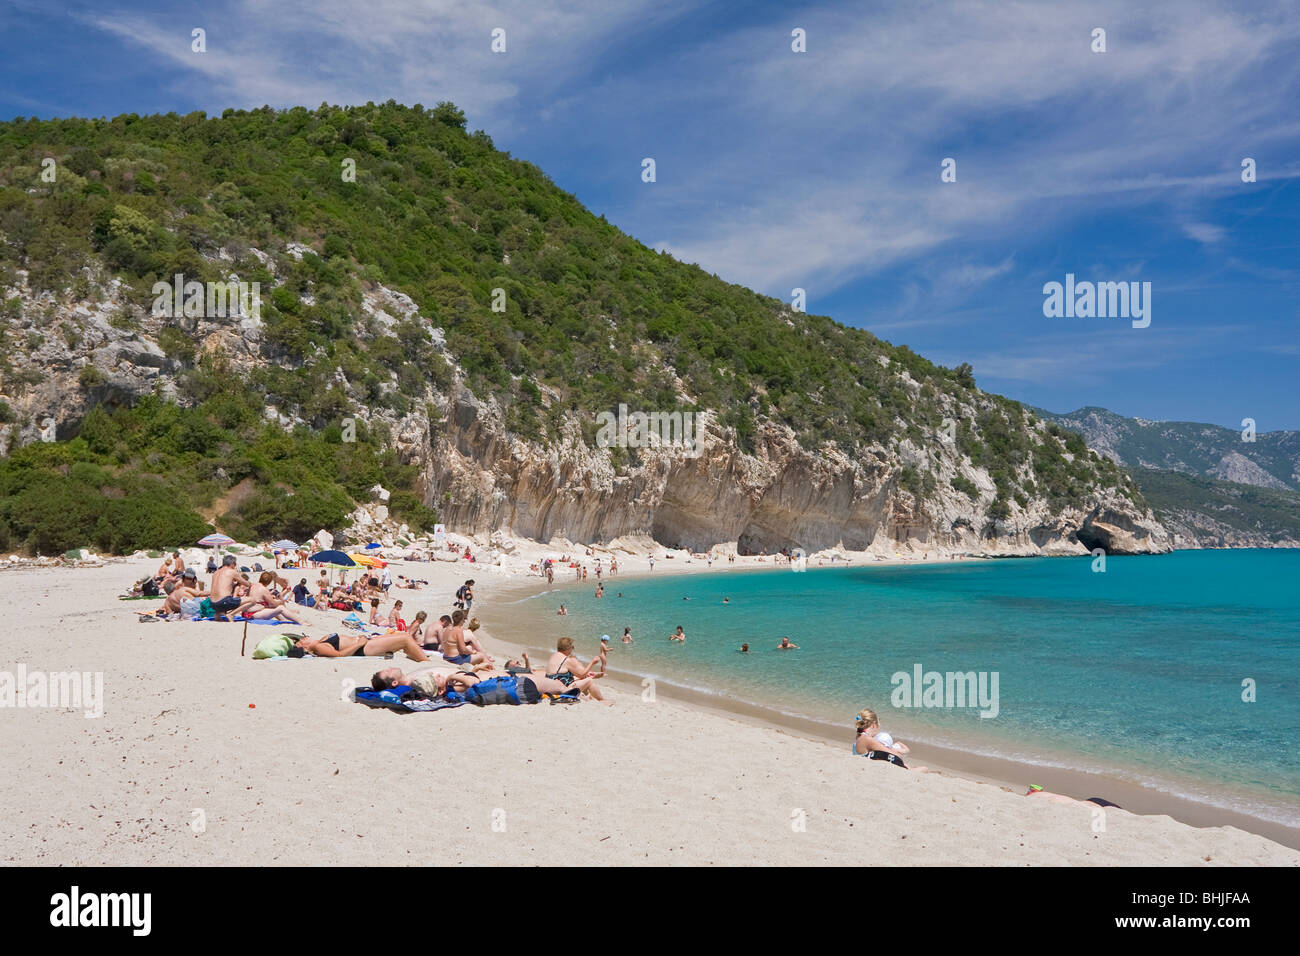 Les gens dans le bain de soleil plage Cala Luna, Sardaigne, île de l'Italie. Eau bleu clair dans la baie de Cala Luna, Mer Méditerranée. Banque D'Images